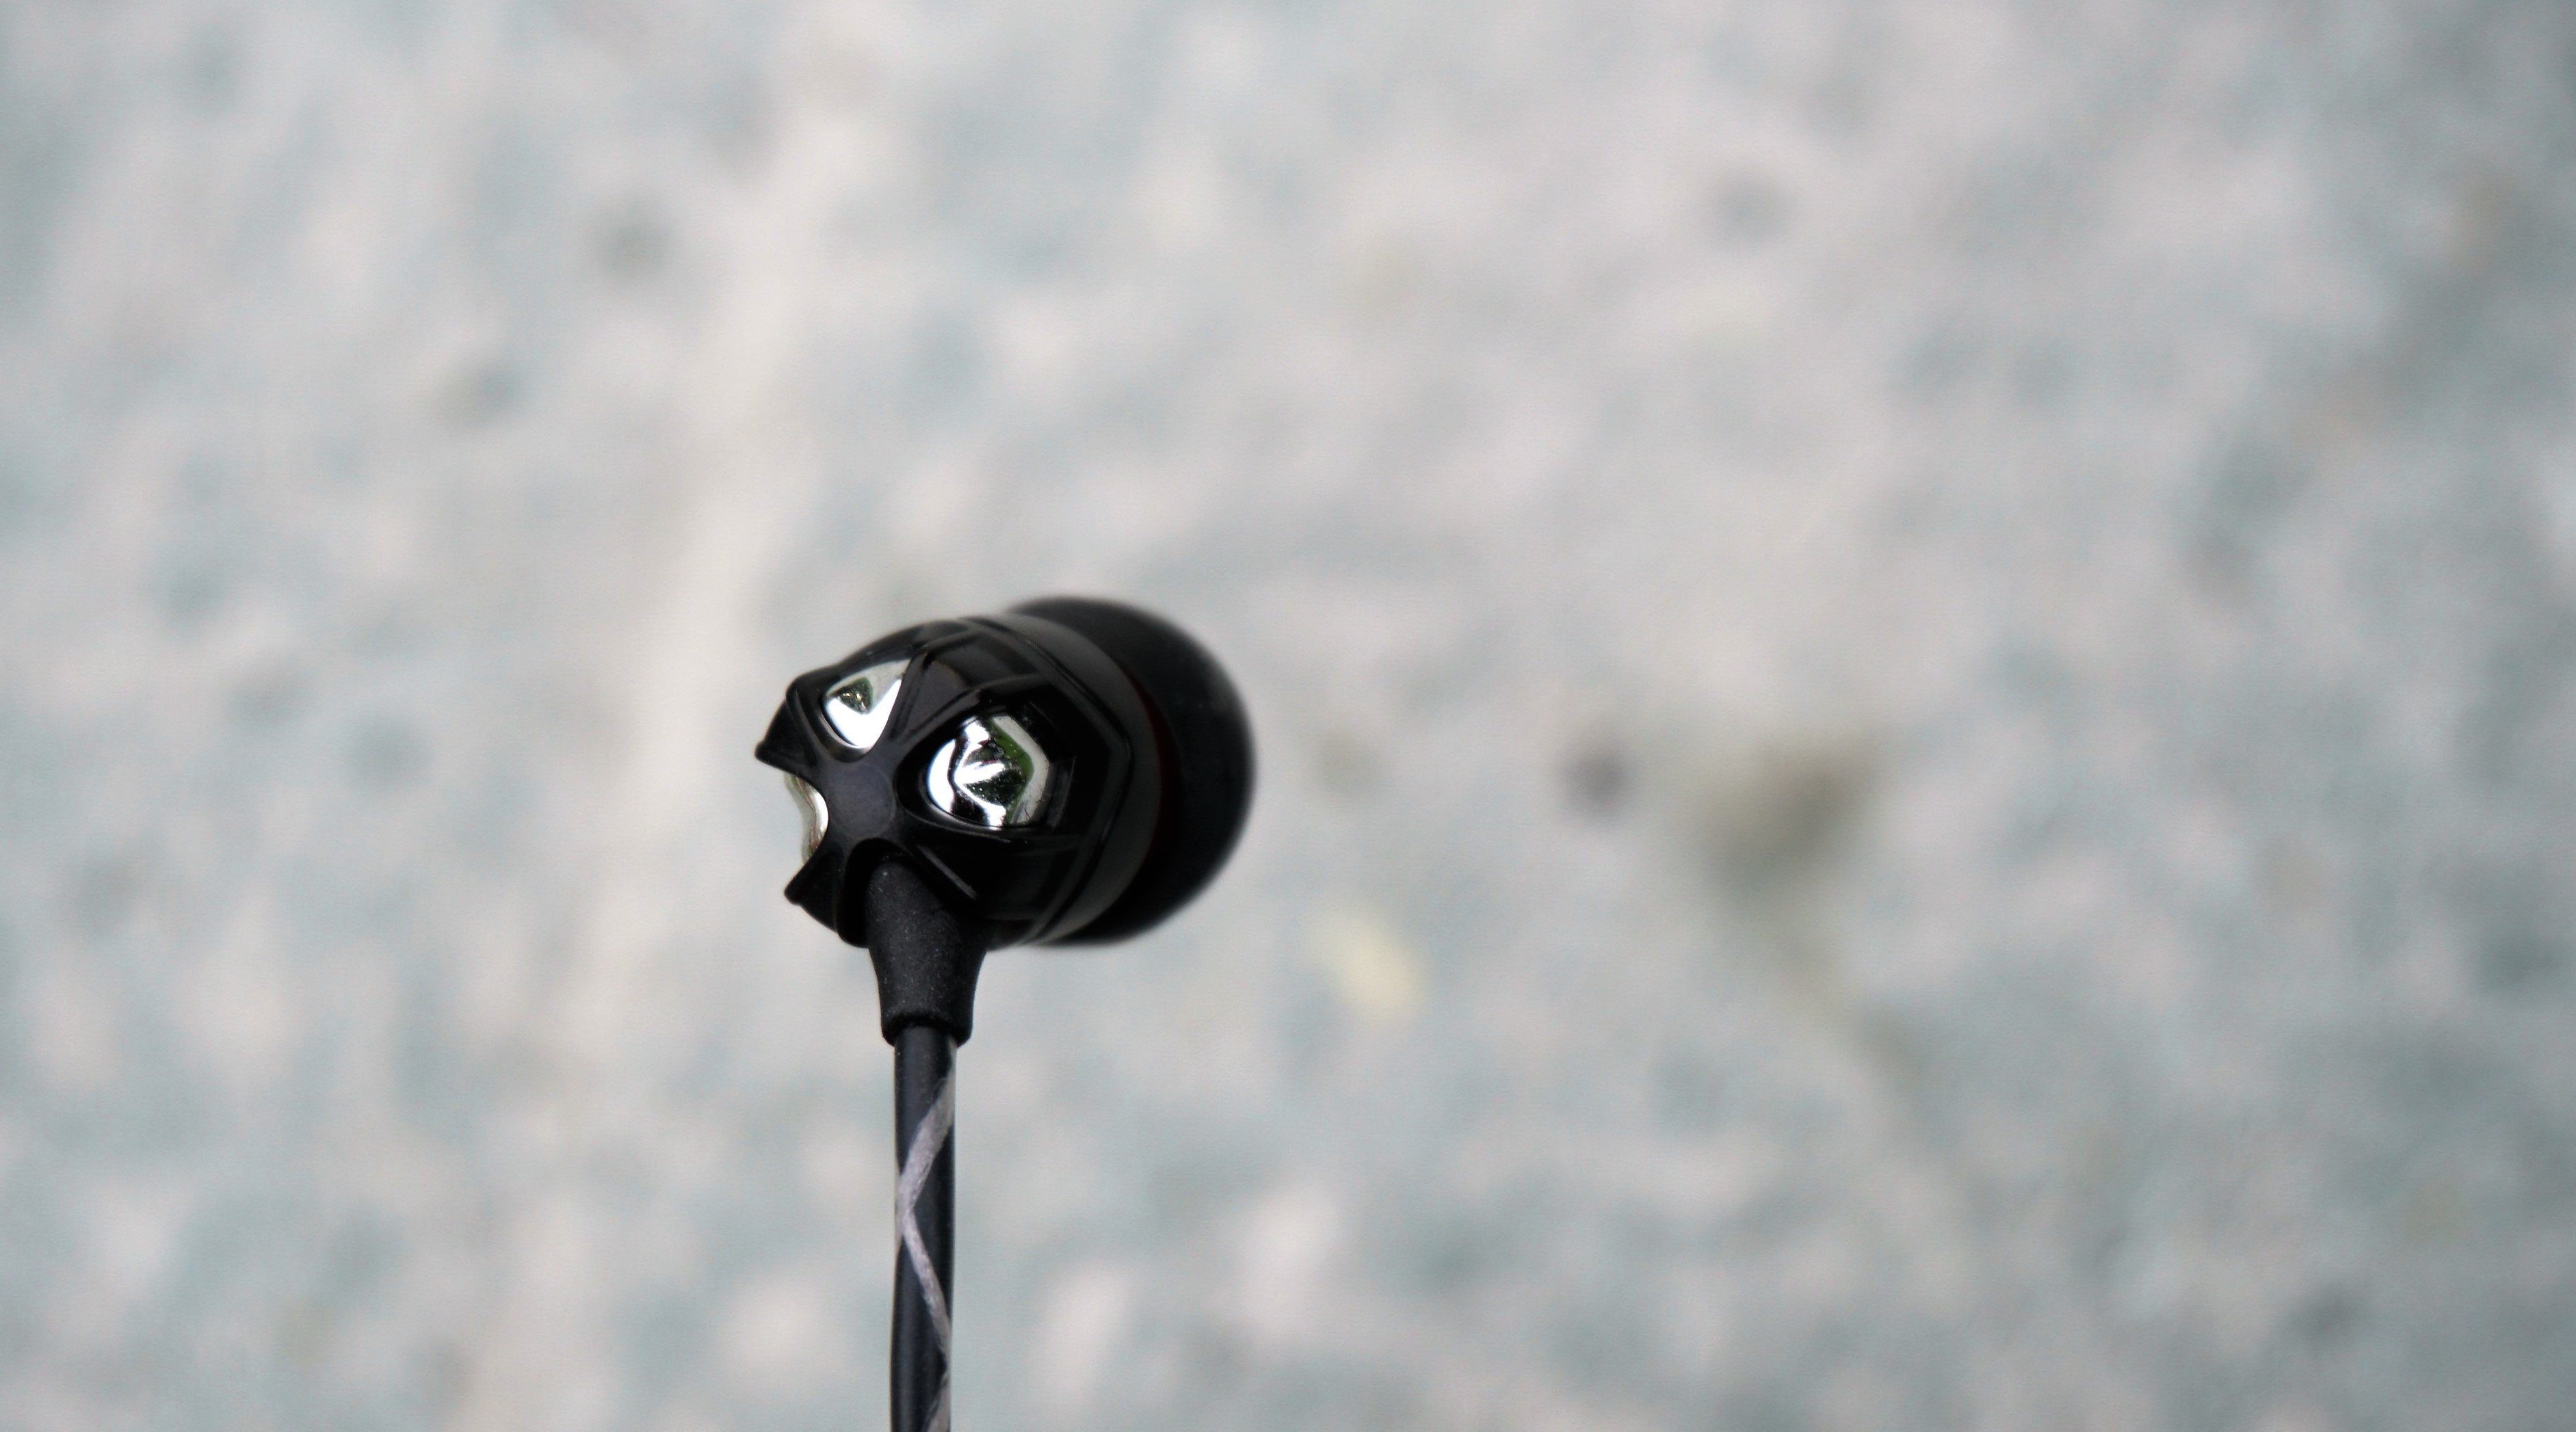 V-MODA Zn Review - V-MODA Delivers with In-Ear Headphones